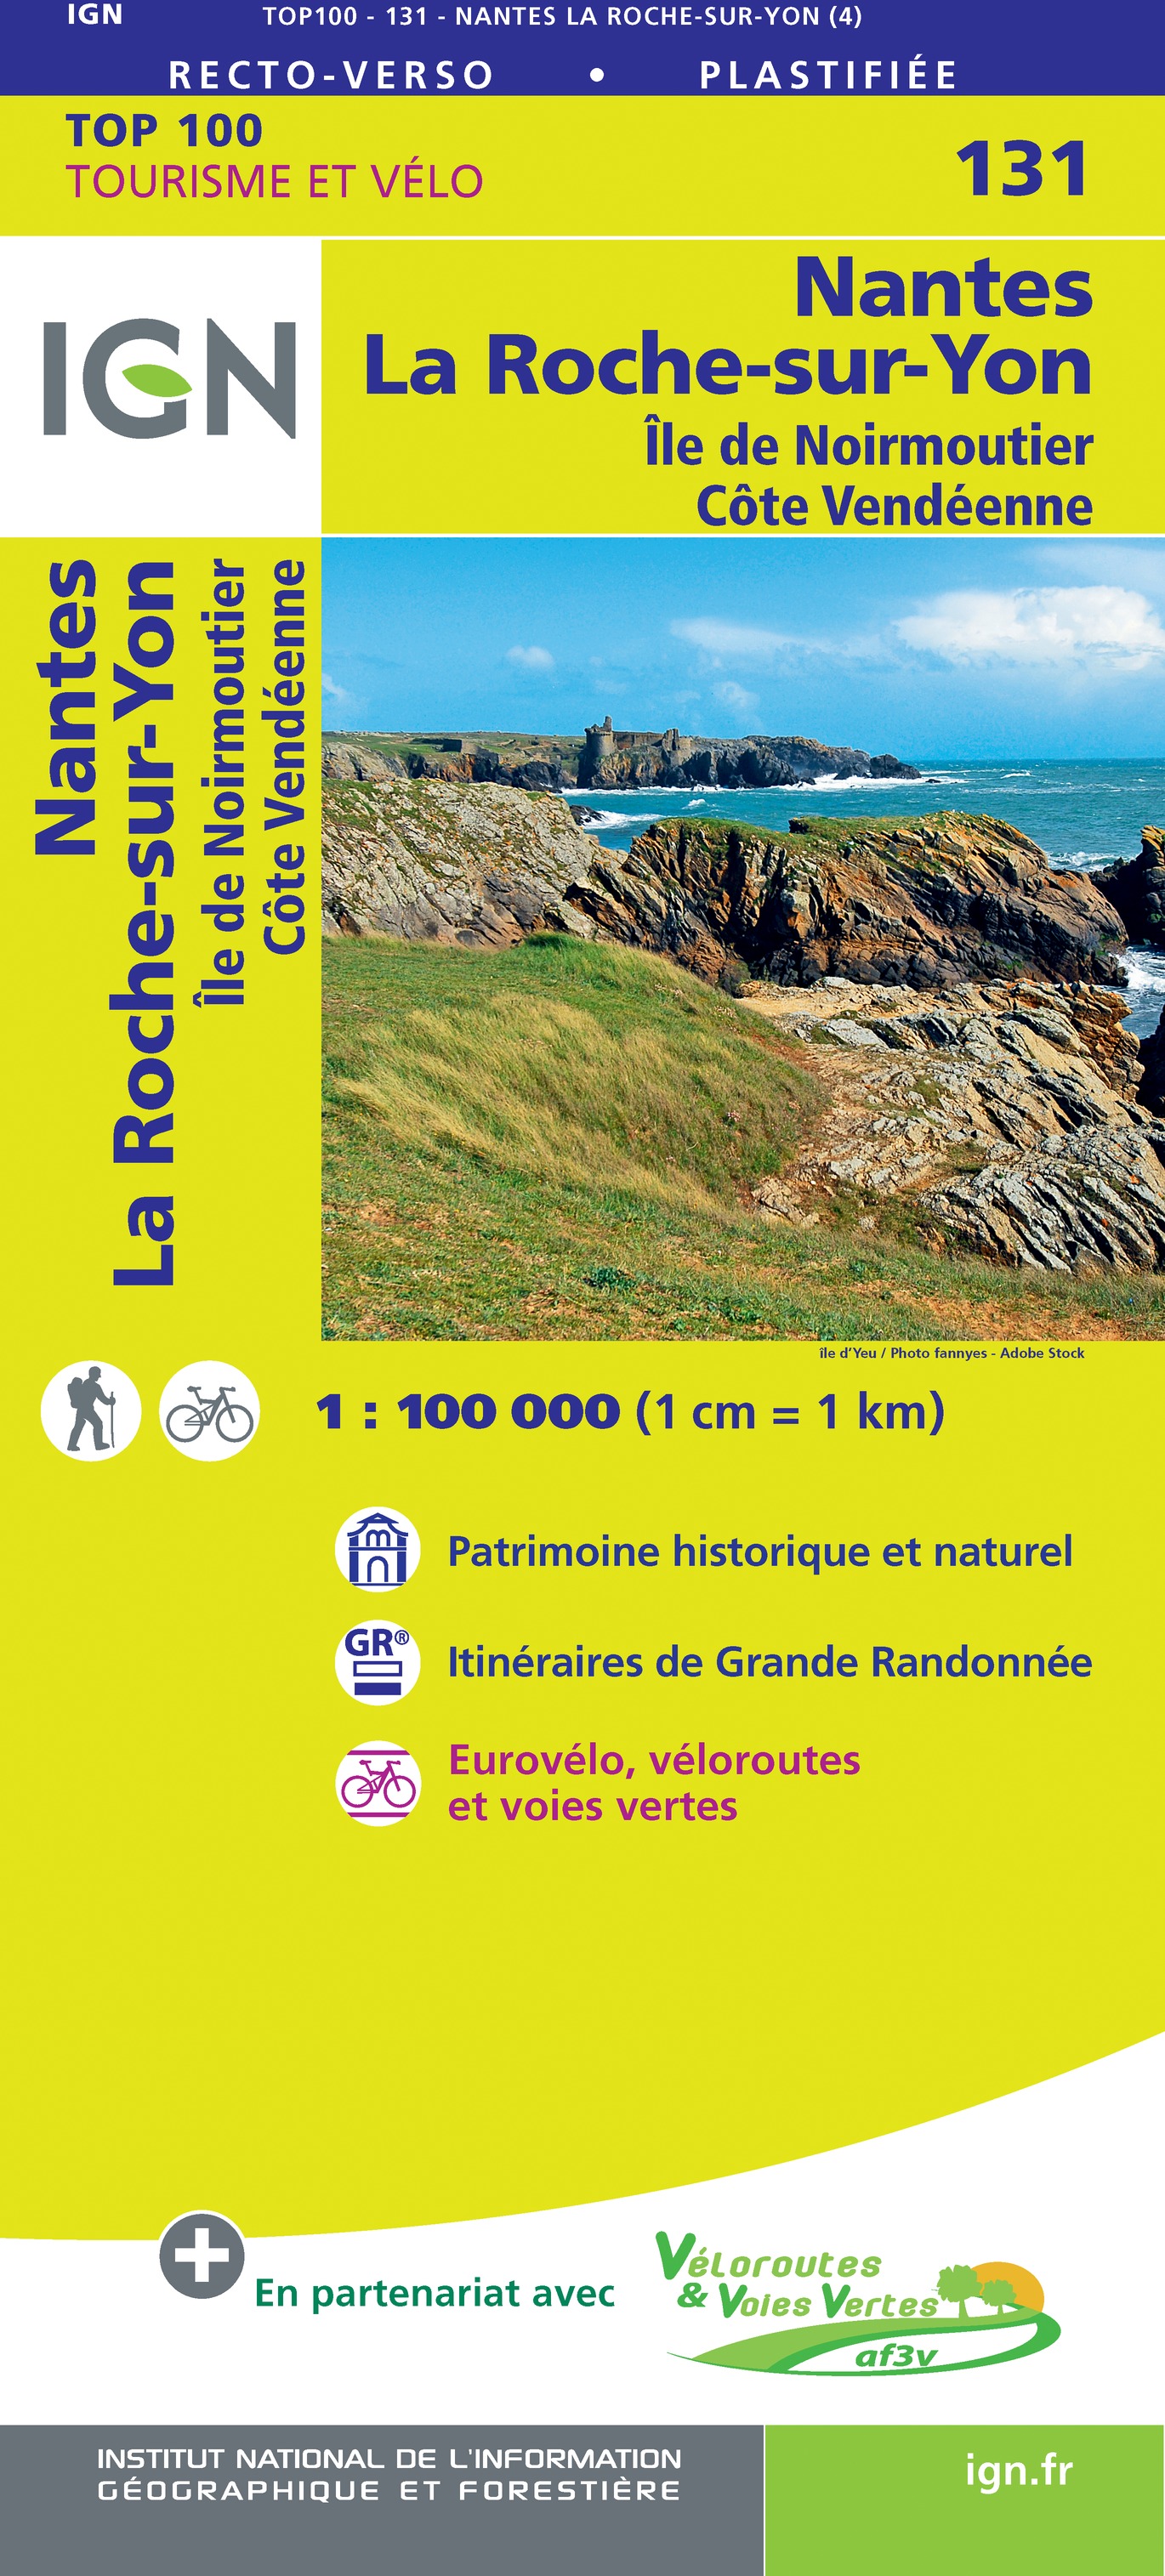 Online bestellen: Fietskaart - Wegenkaart - landkaart 131 Nantes - La Roche-Sur-Yon | IGN - Institut Géographique National